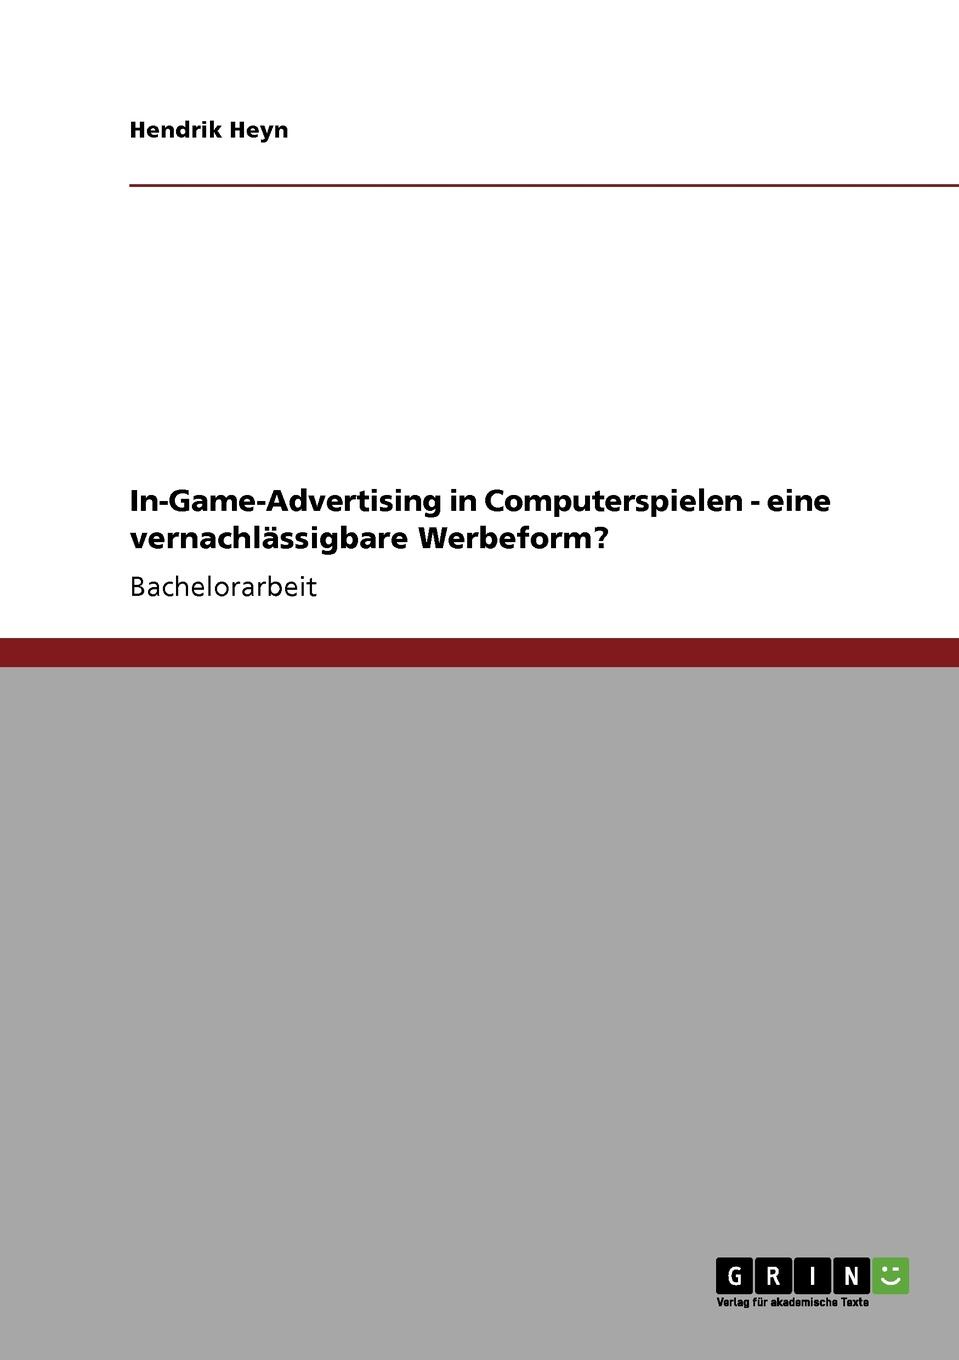 фото In-Game-Advertising in Computerspielen - eine vernachlassigbare Werbeform.